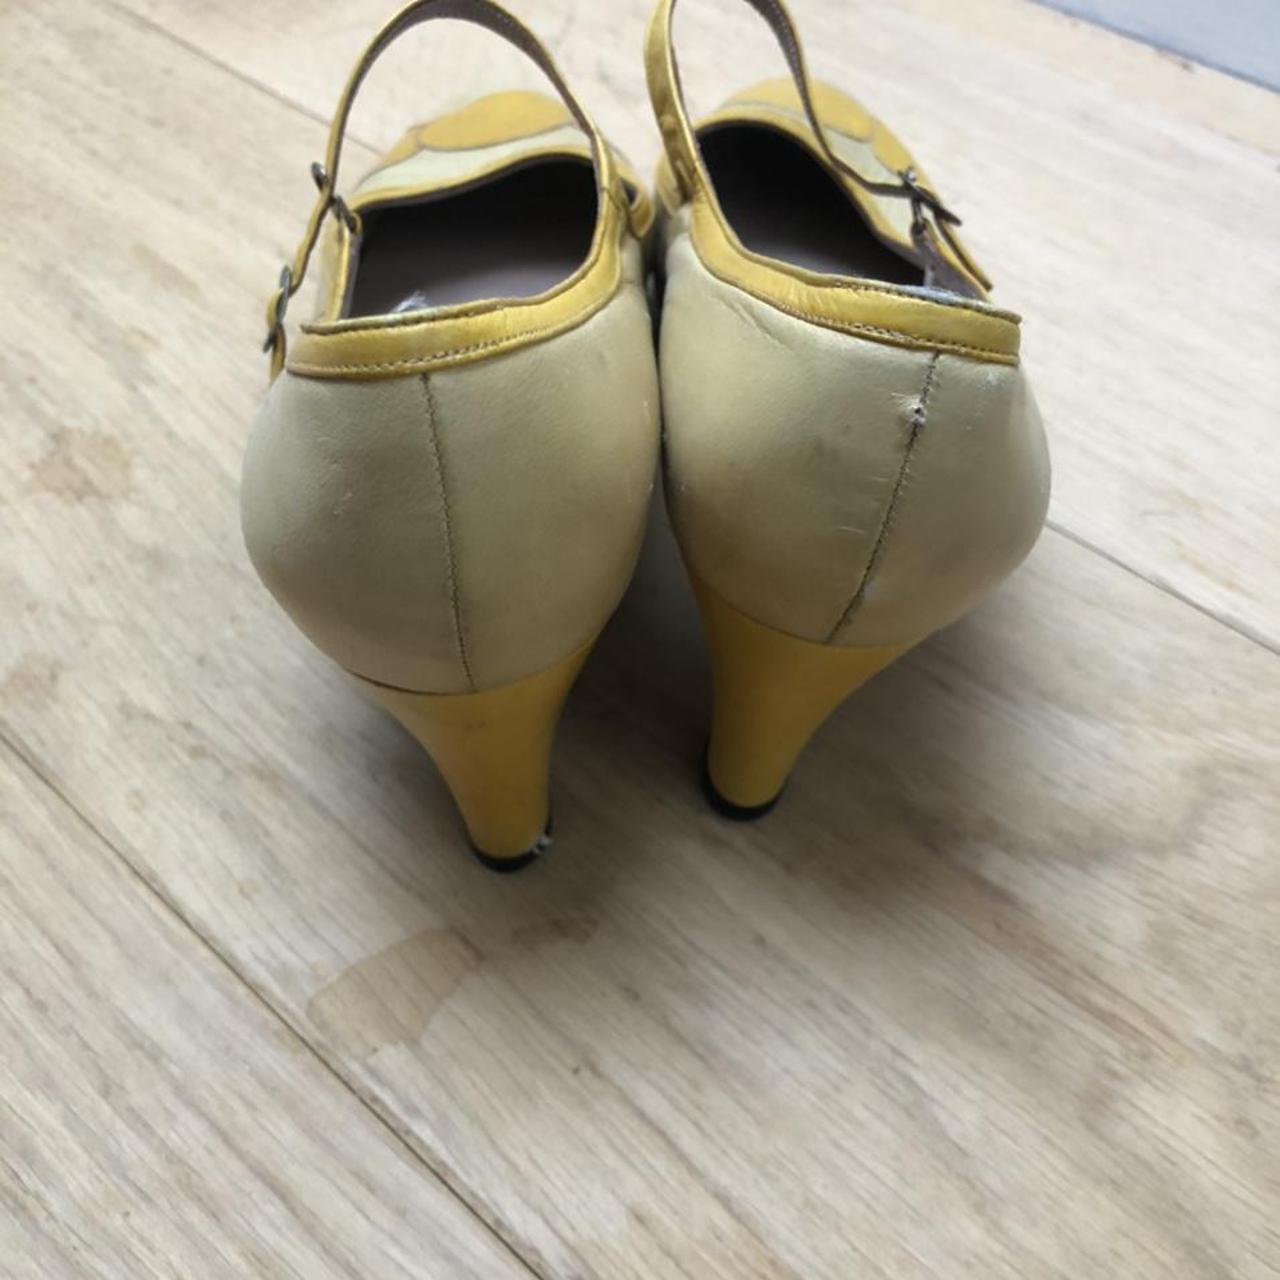 True vintage Dior shoes. Works of art in beautiful... - Depop